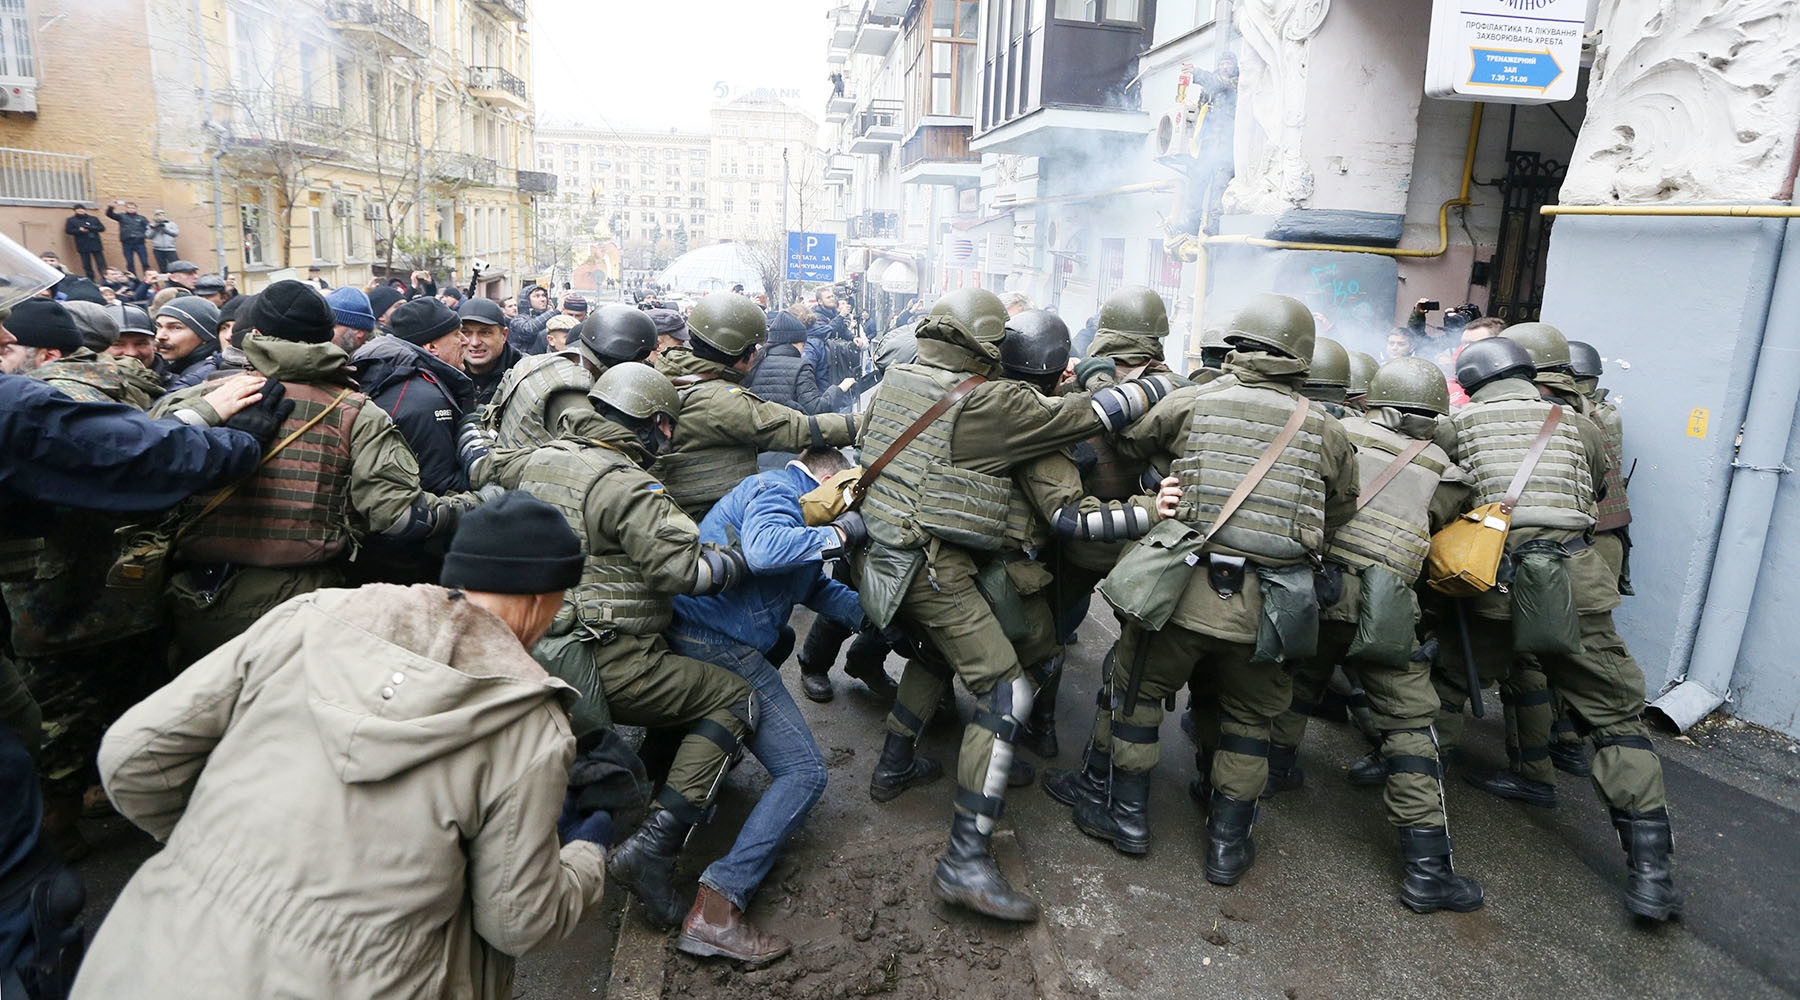 Рукопашная демократия: как сторонники Саакашвили отбили политика у СБУ и устроили митинг в Киеве